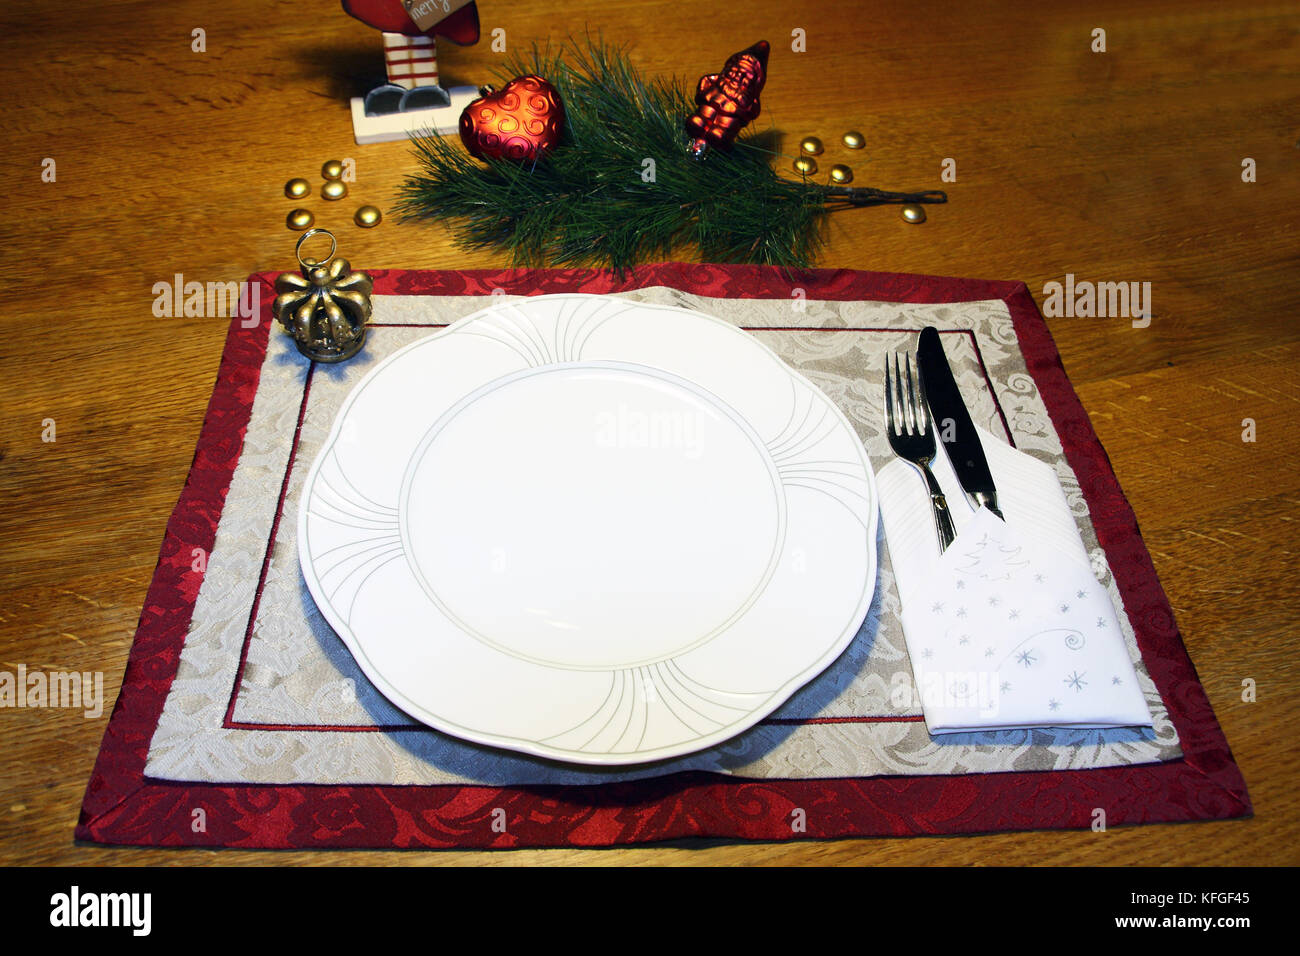 Gedeckter Tisch, mit Platzset Teller und Besteck und weihnachtlich dekoriert Foto de stock